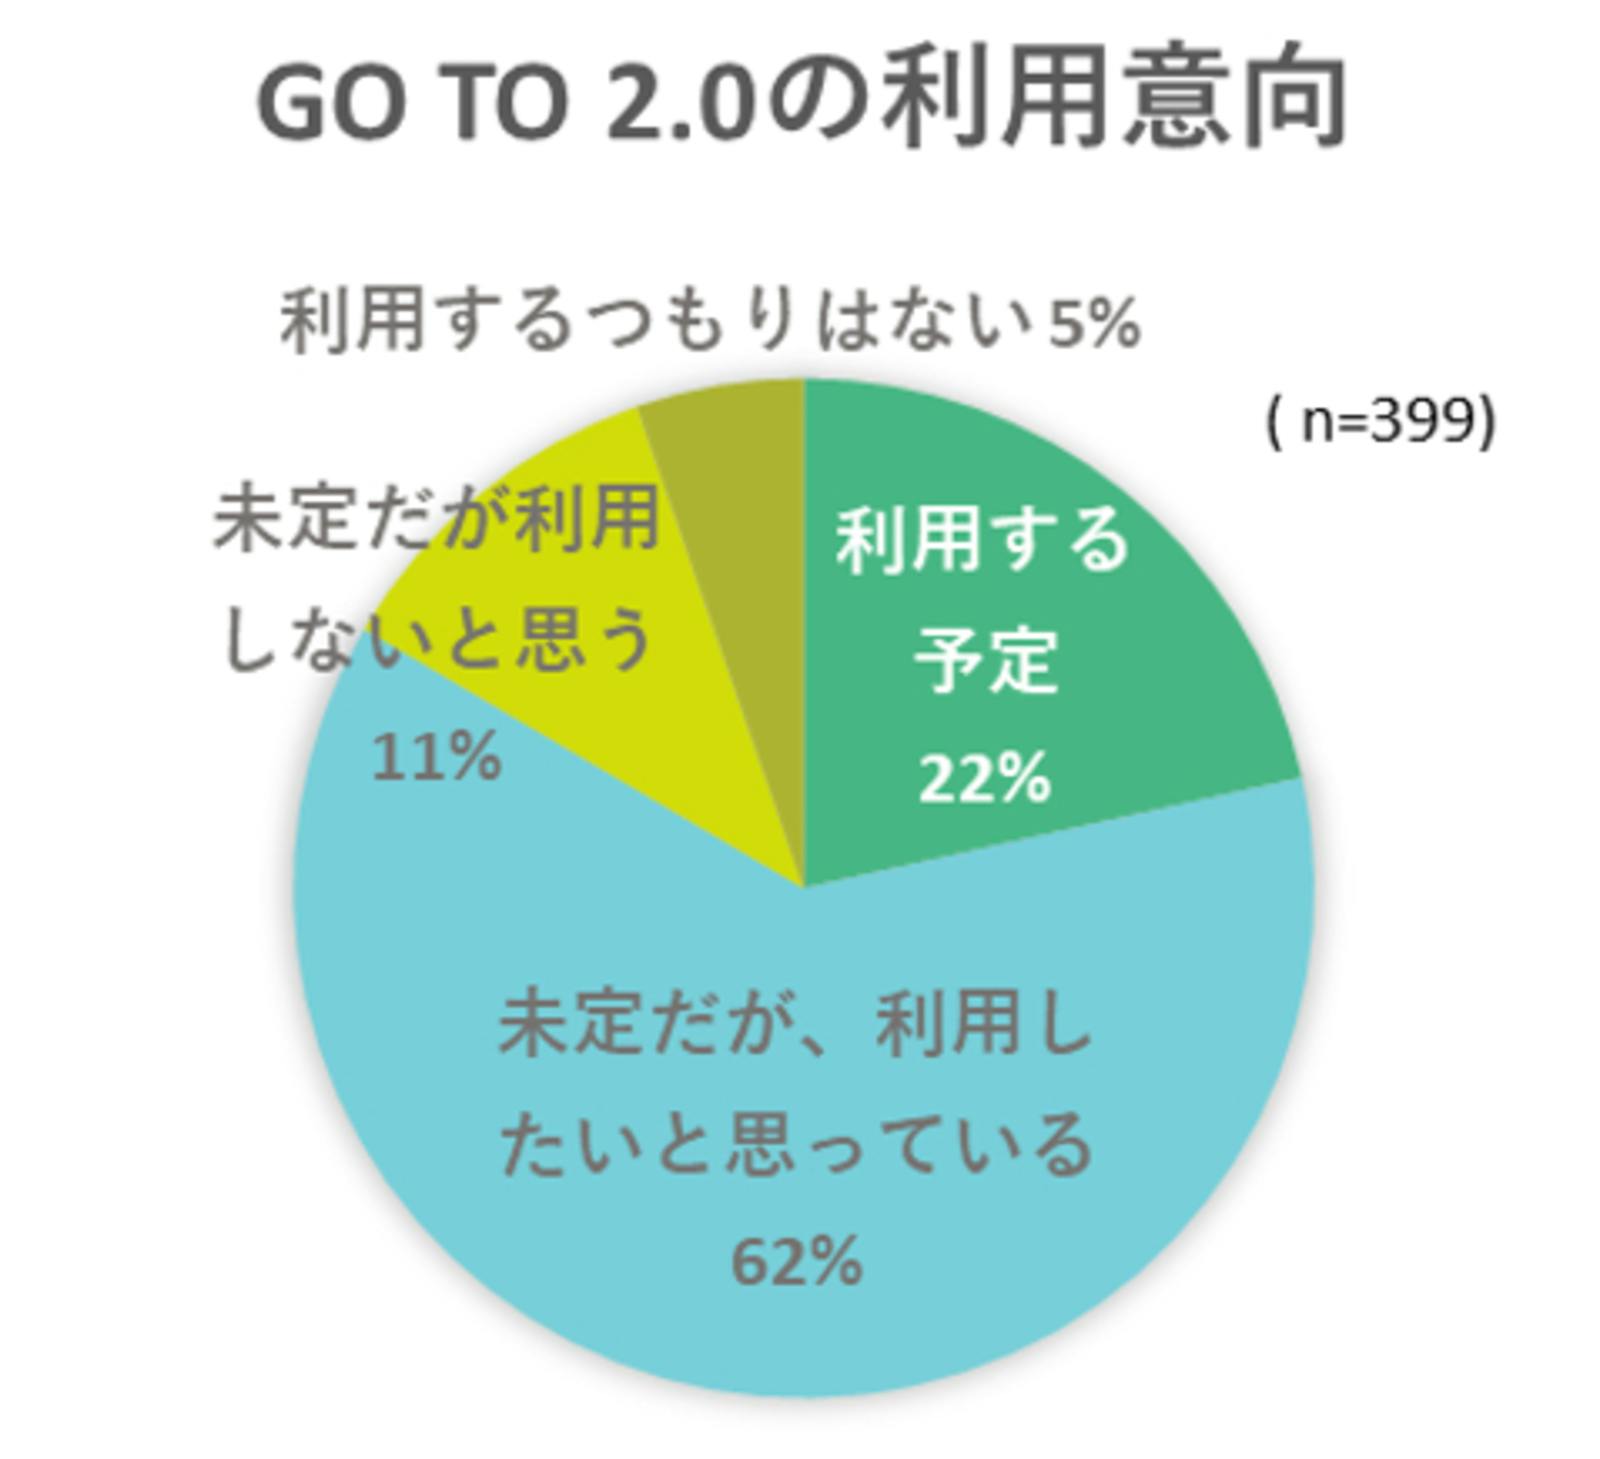 Go To 2.0の利用意向の円グラフ